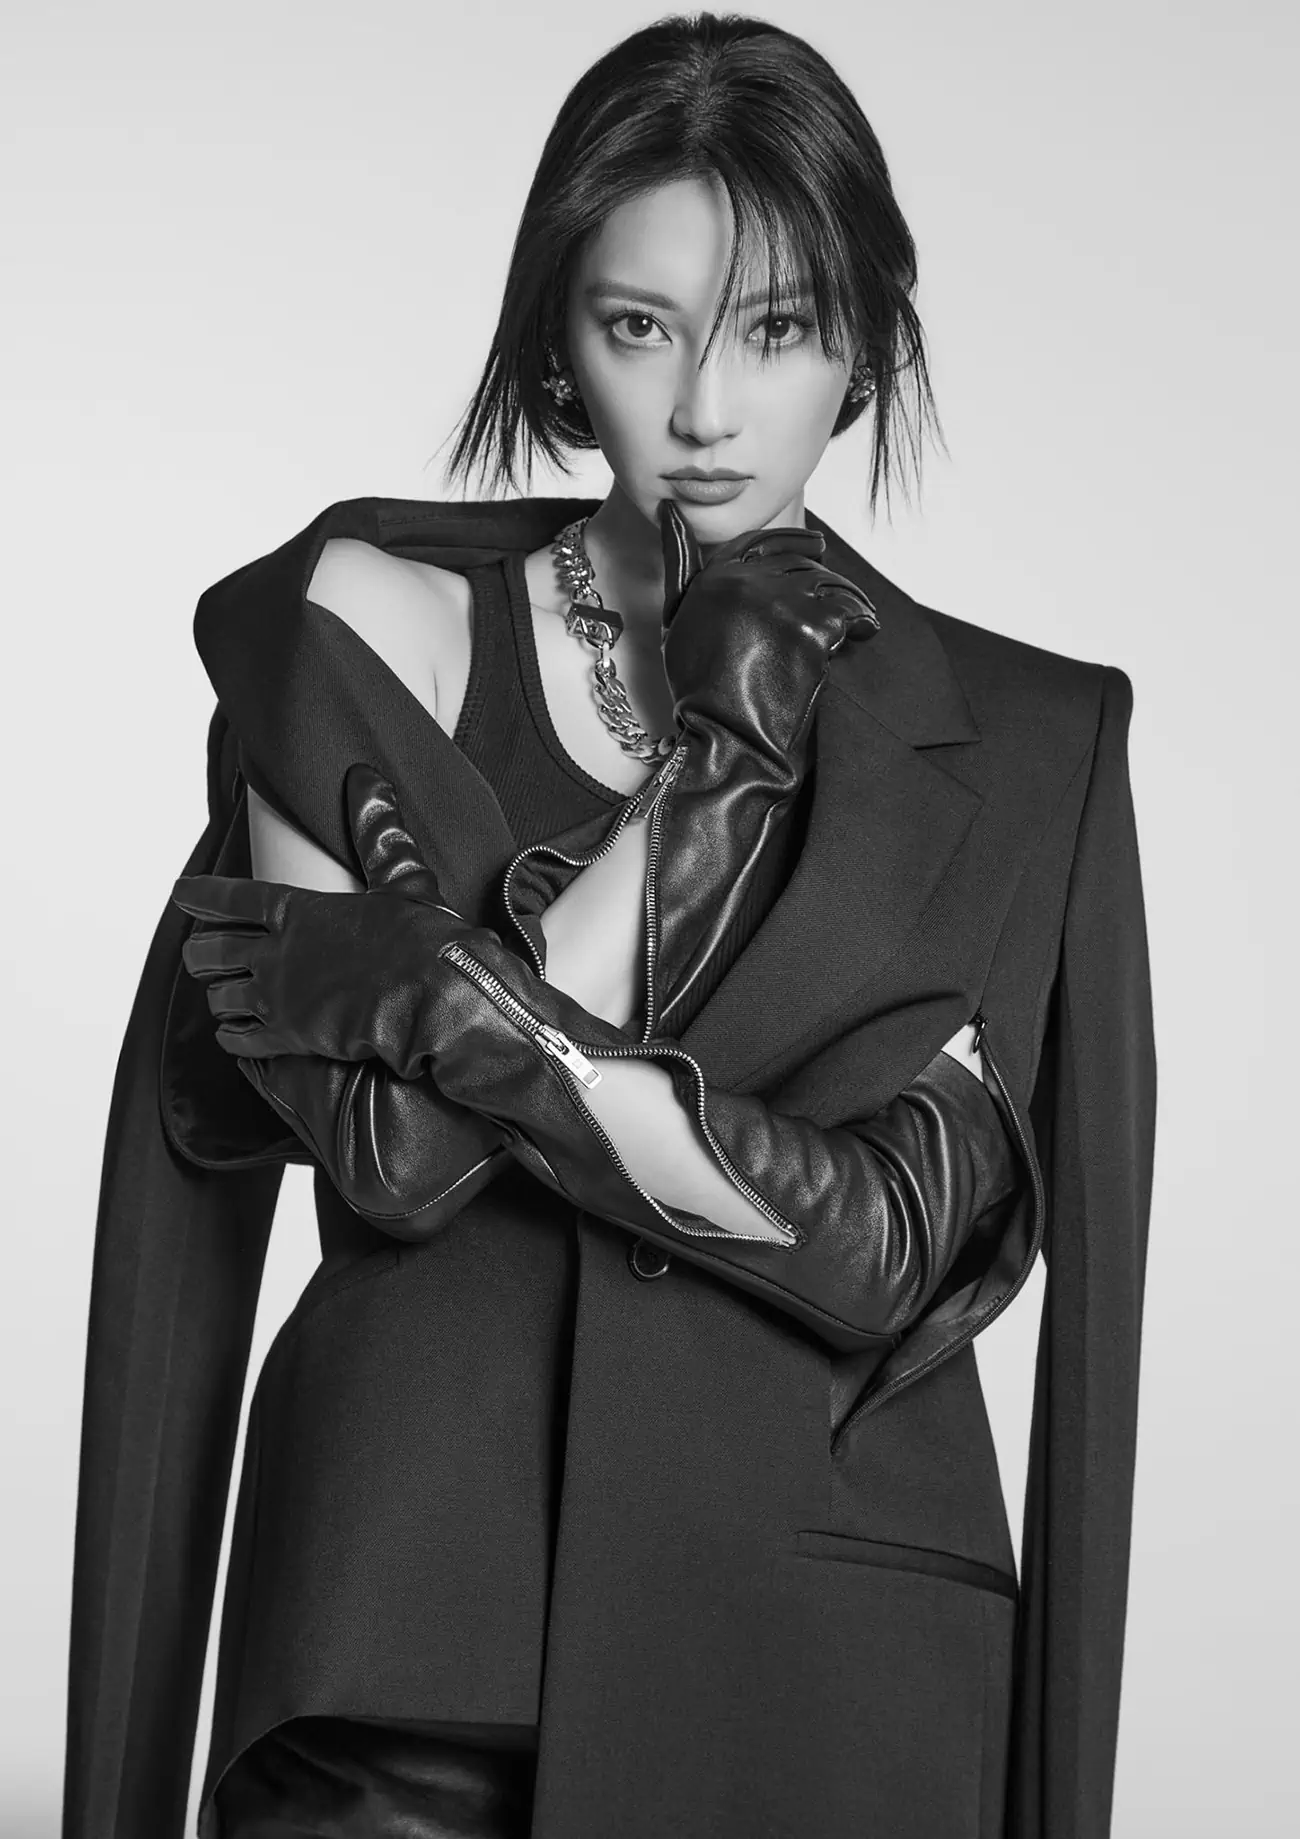 Nanao becomes Givenchy's first Japanese actress ambassador